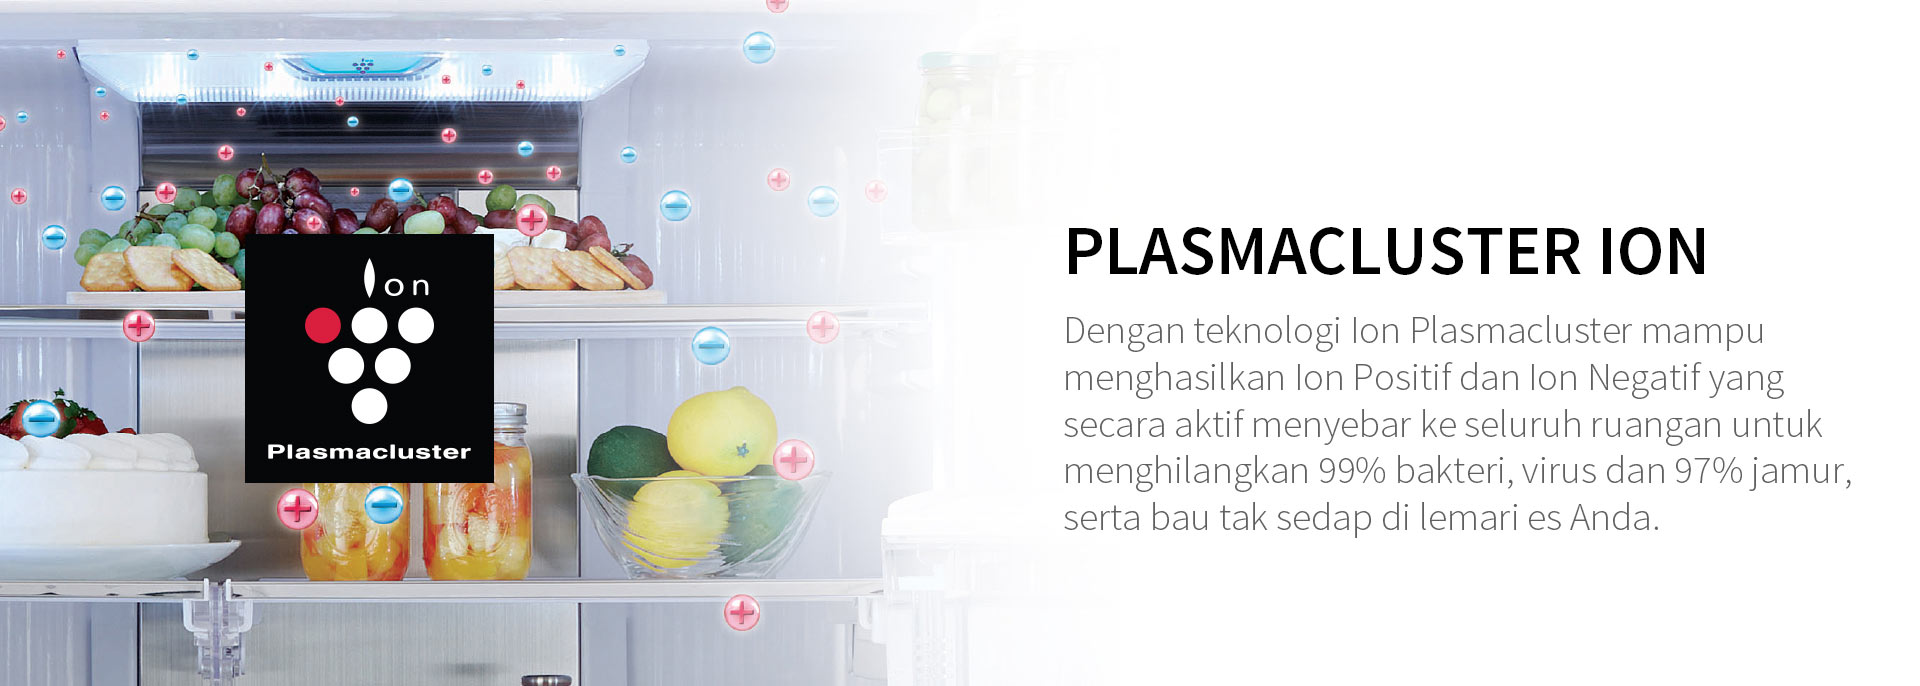 Plasmacluster.jpg